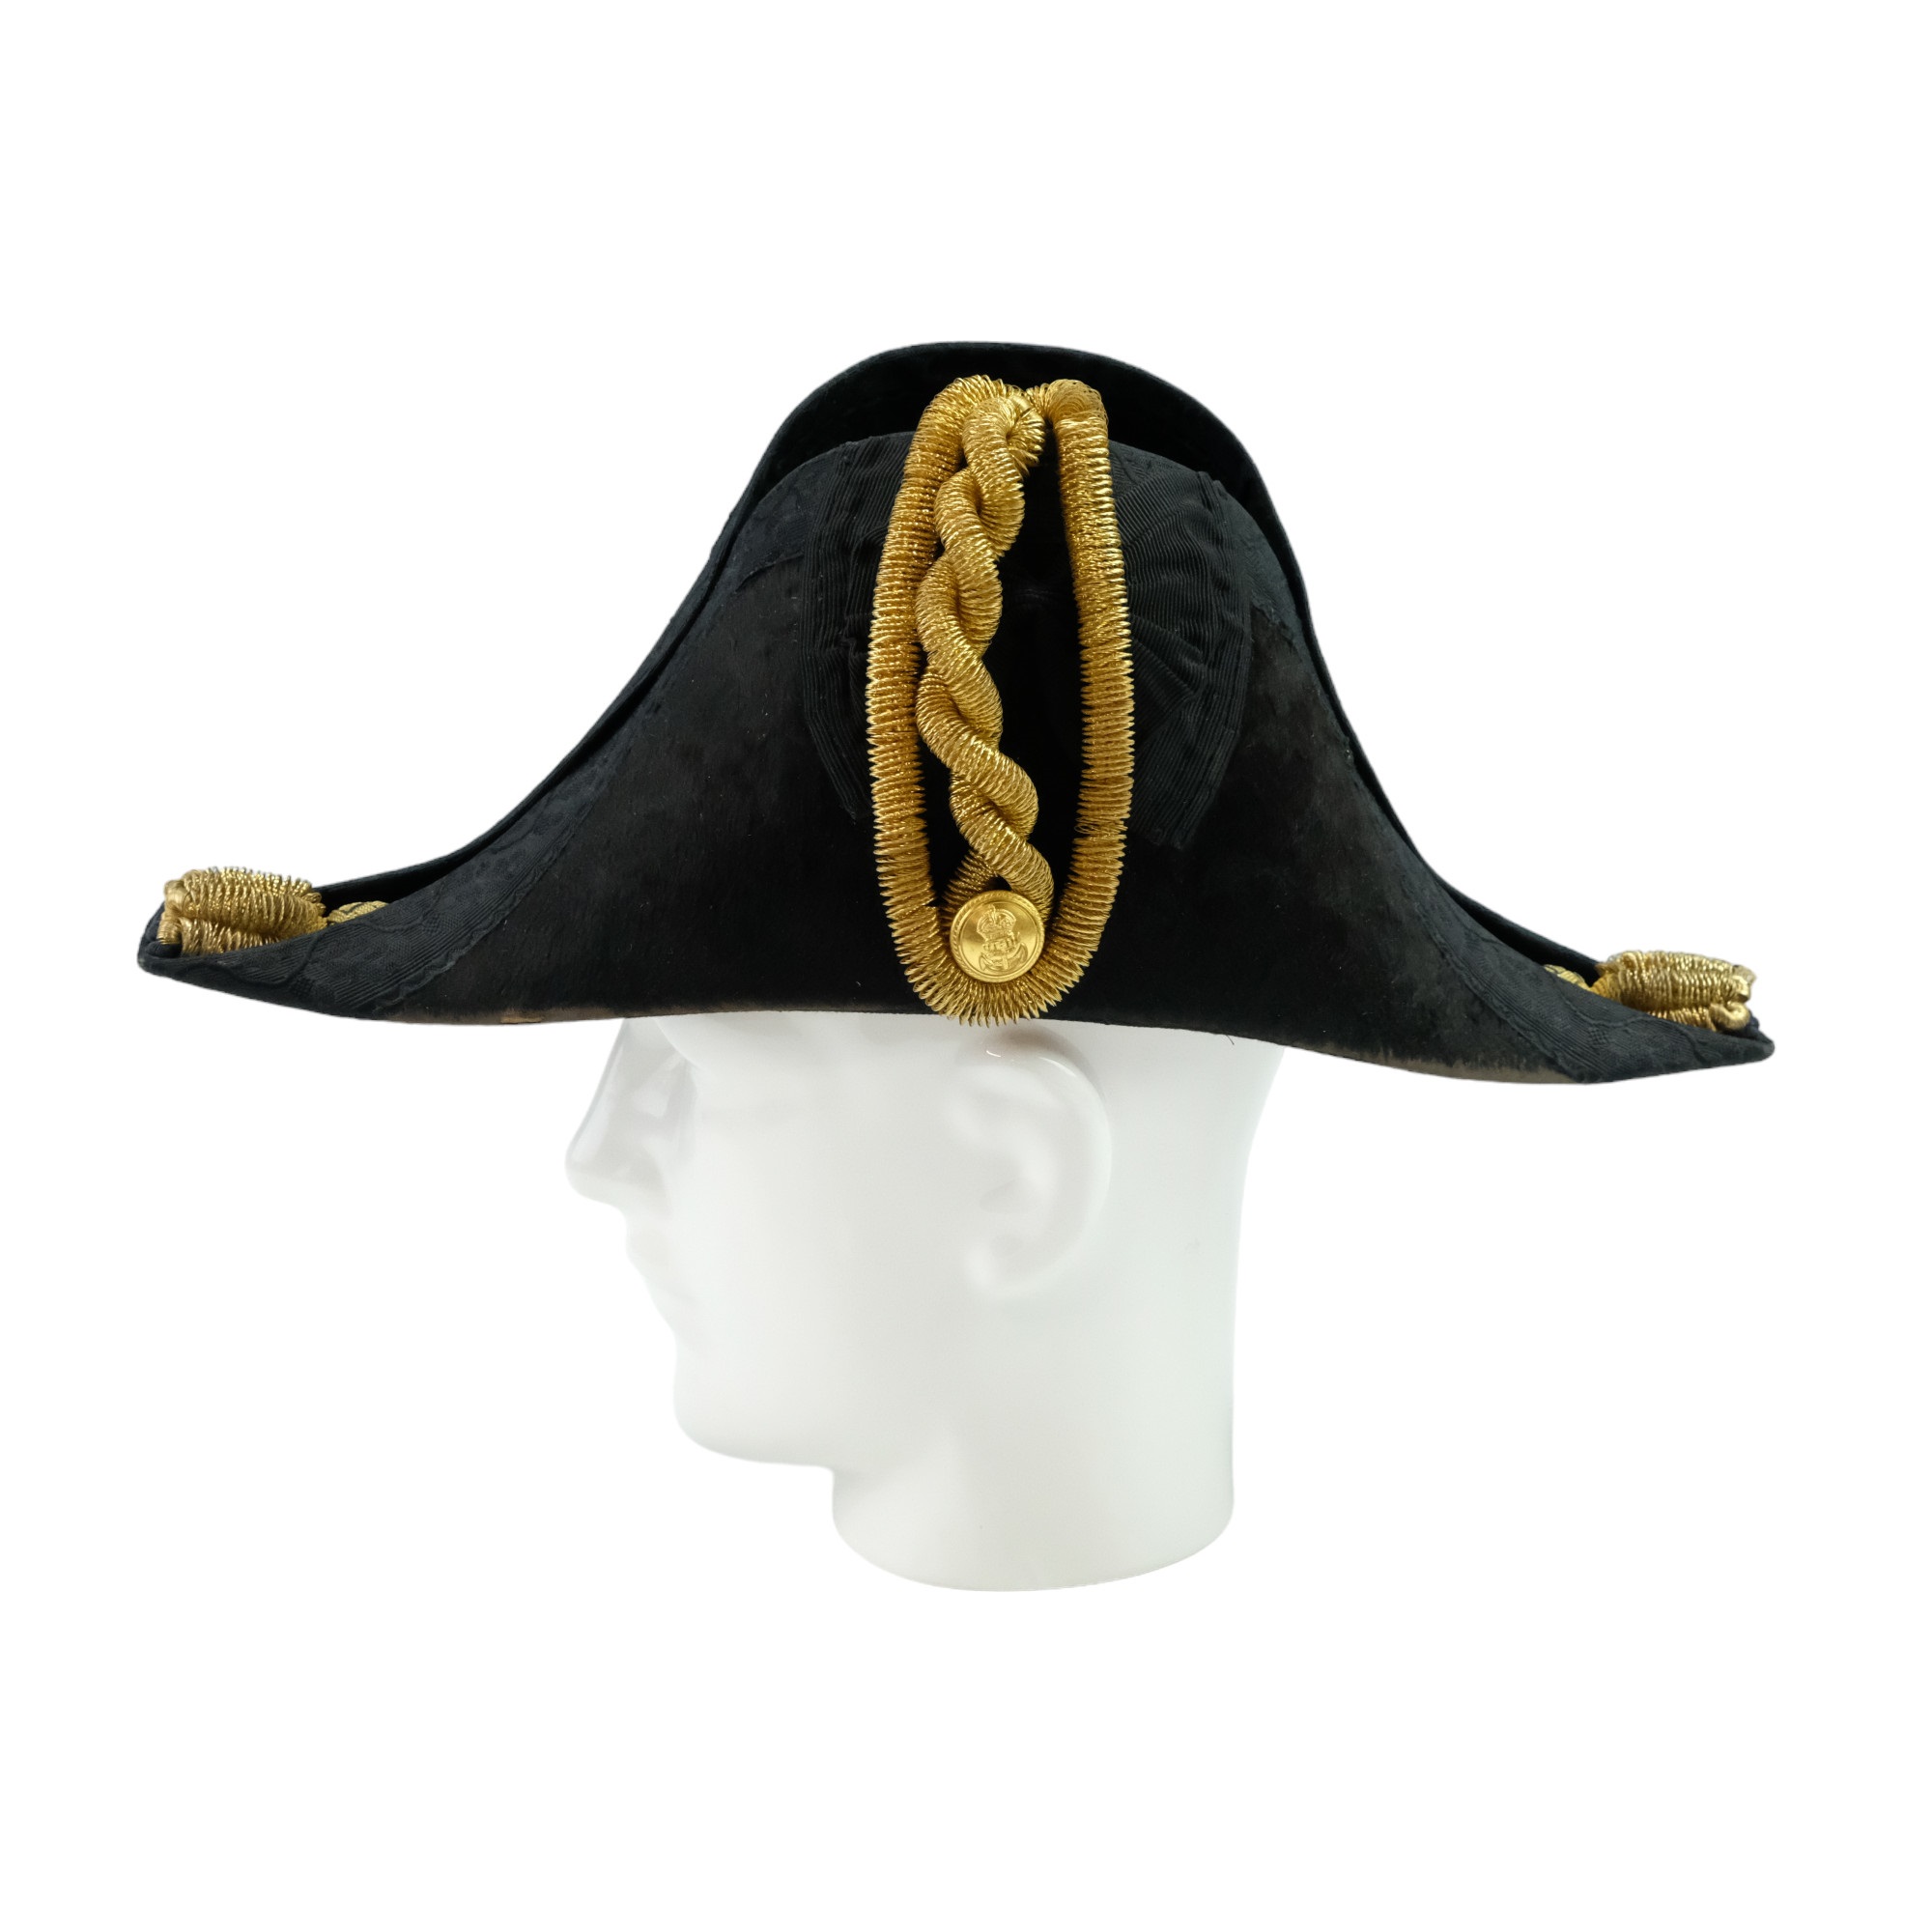 A George VI Royal Navy officer's cocked hat, epaulettes, sword belt and uniform shoulder straps, - Image 3 of 10